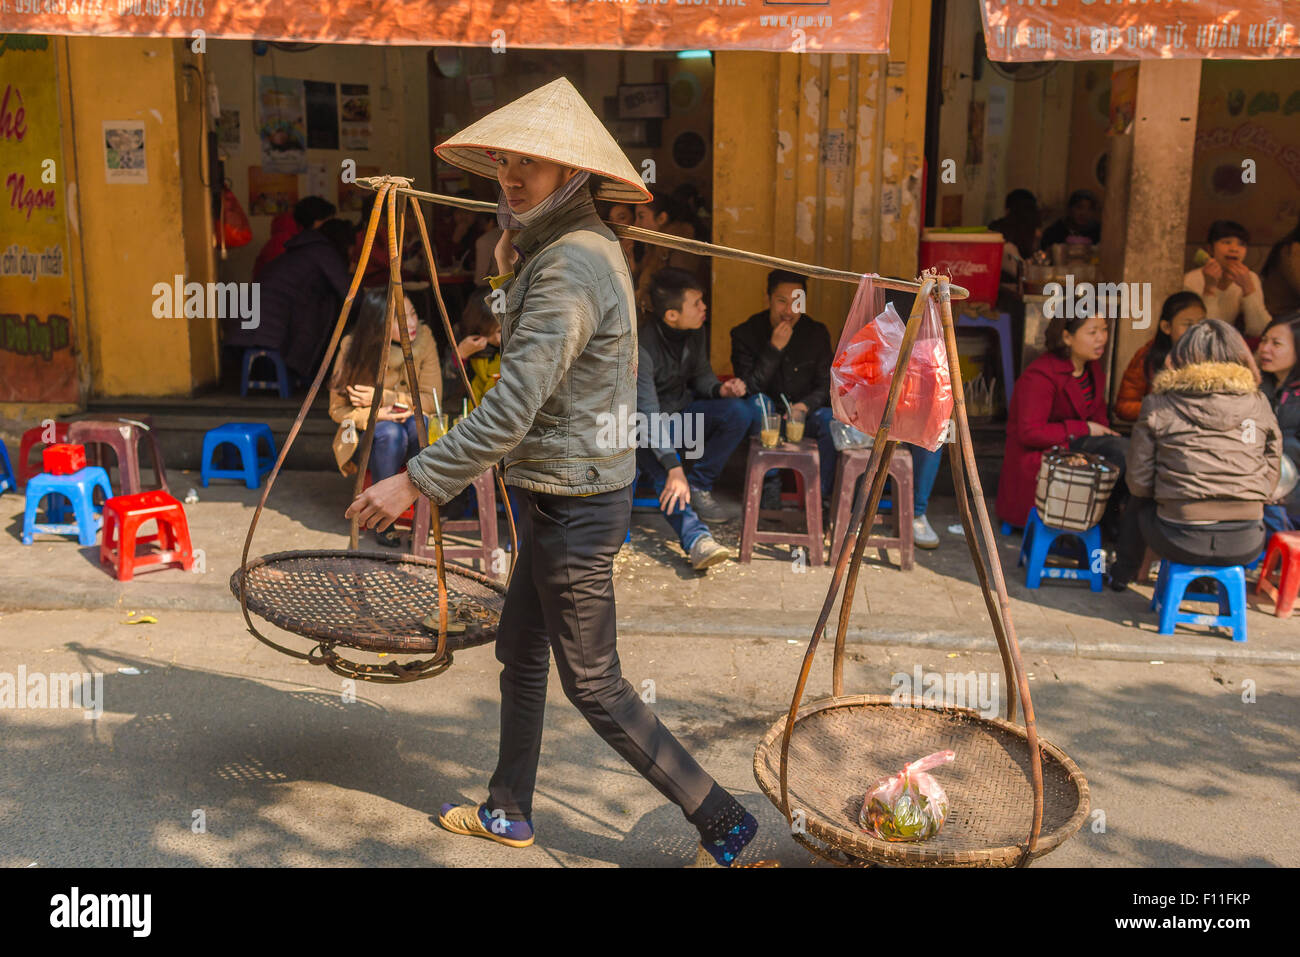 Vietnam Frau Vendor, ein Straßenhändler in einem kegelförmigen Hut trägt ihr Körbe durch die Altstadt von Hanoi, Vietnam. Stockfoto